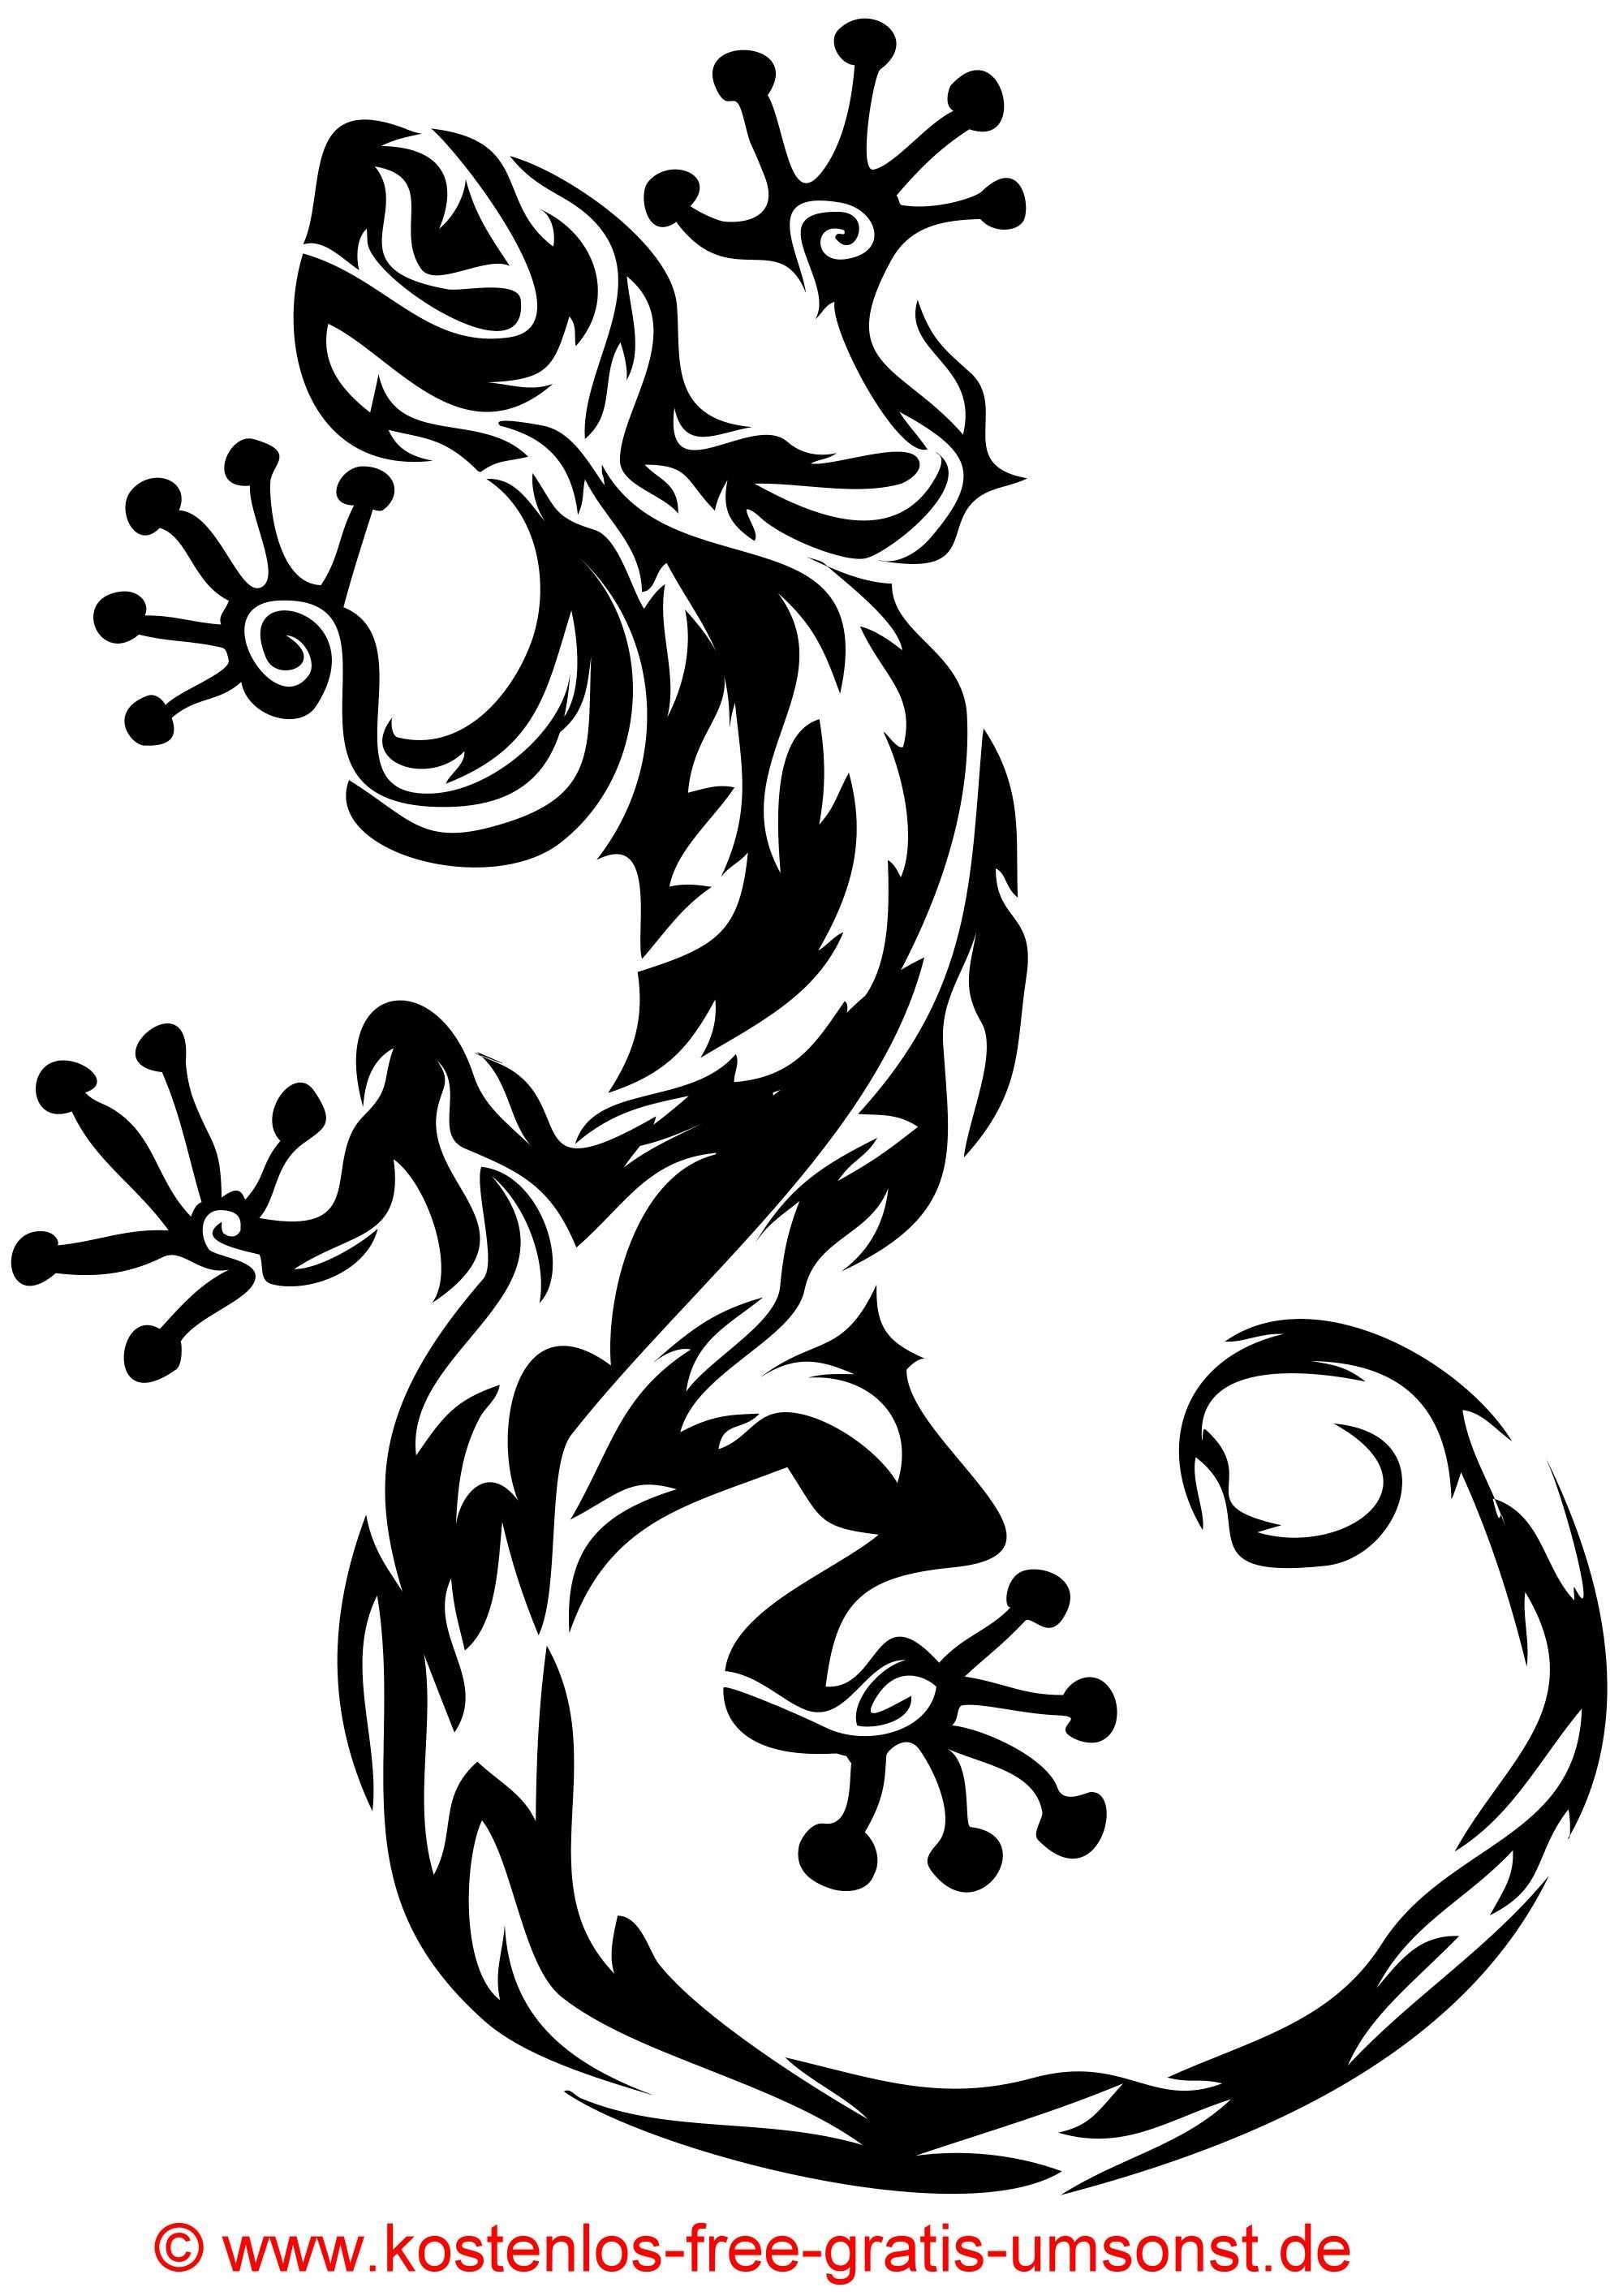 Tiere Tattoo Bild Eidechse Gecko Tattoomotive Tribal Art Schwarze Tattoobilder Tattoovorlagen Kostenlos Jpg 2000 Tattoovorlagen Kostenlos Tier Tattoo Eidechse